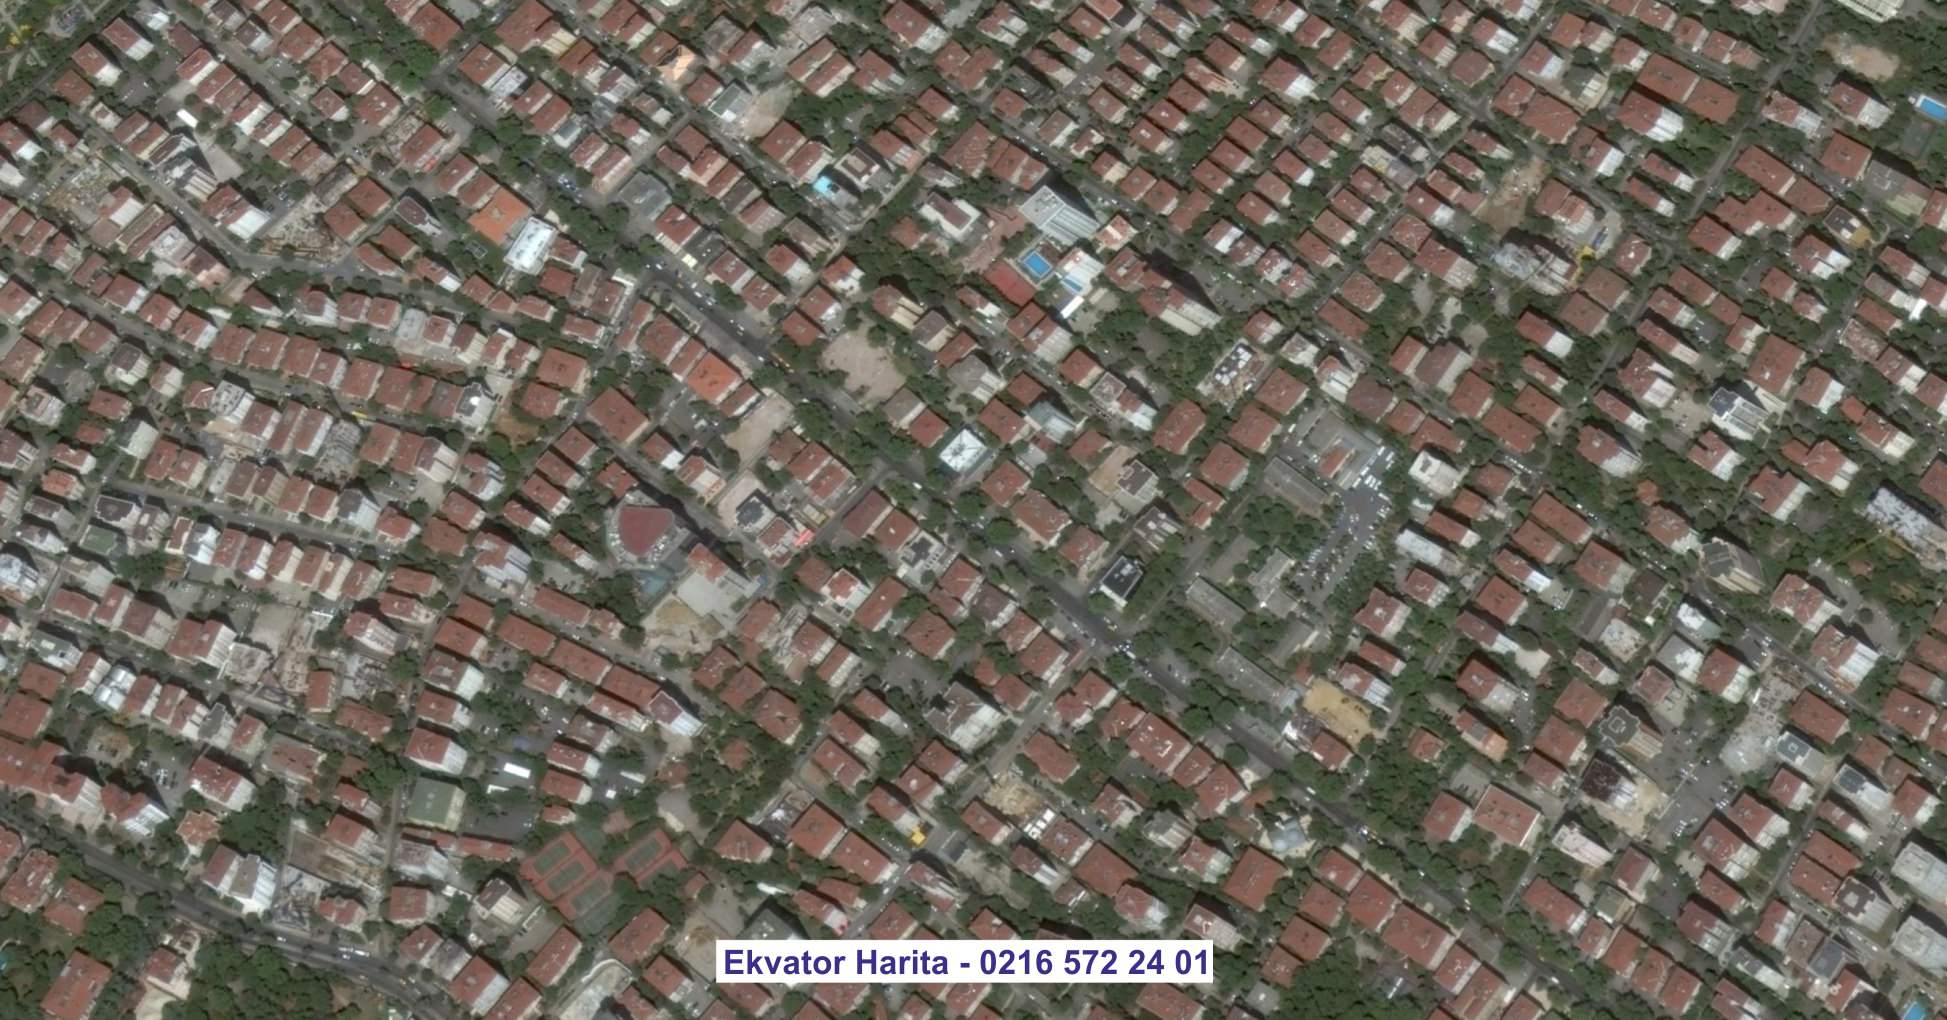 Şırnak Uydu Görüntüsü Örnek Fotoğrafı